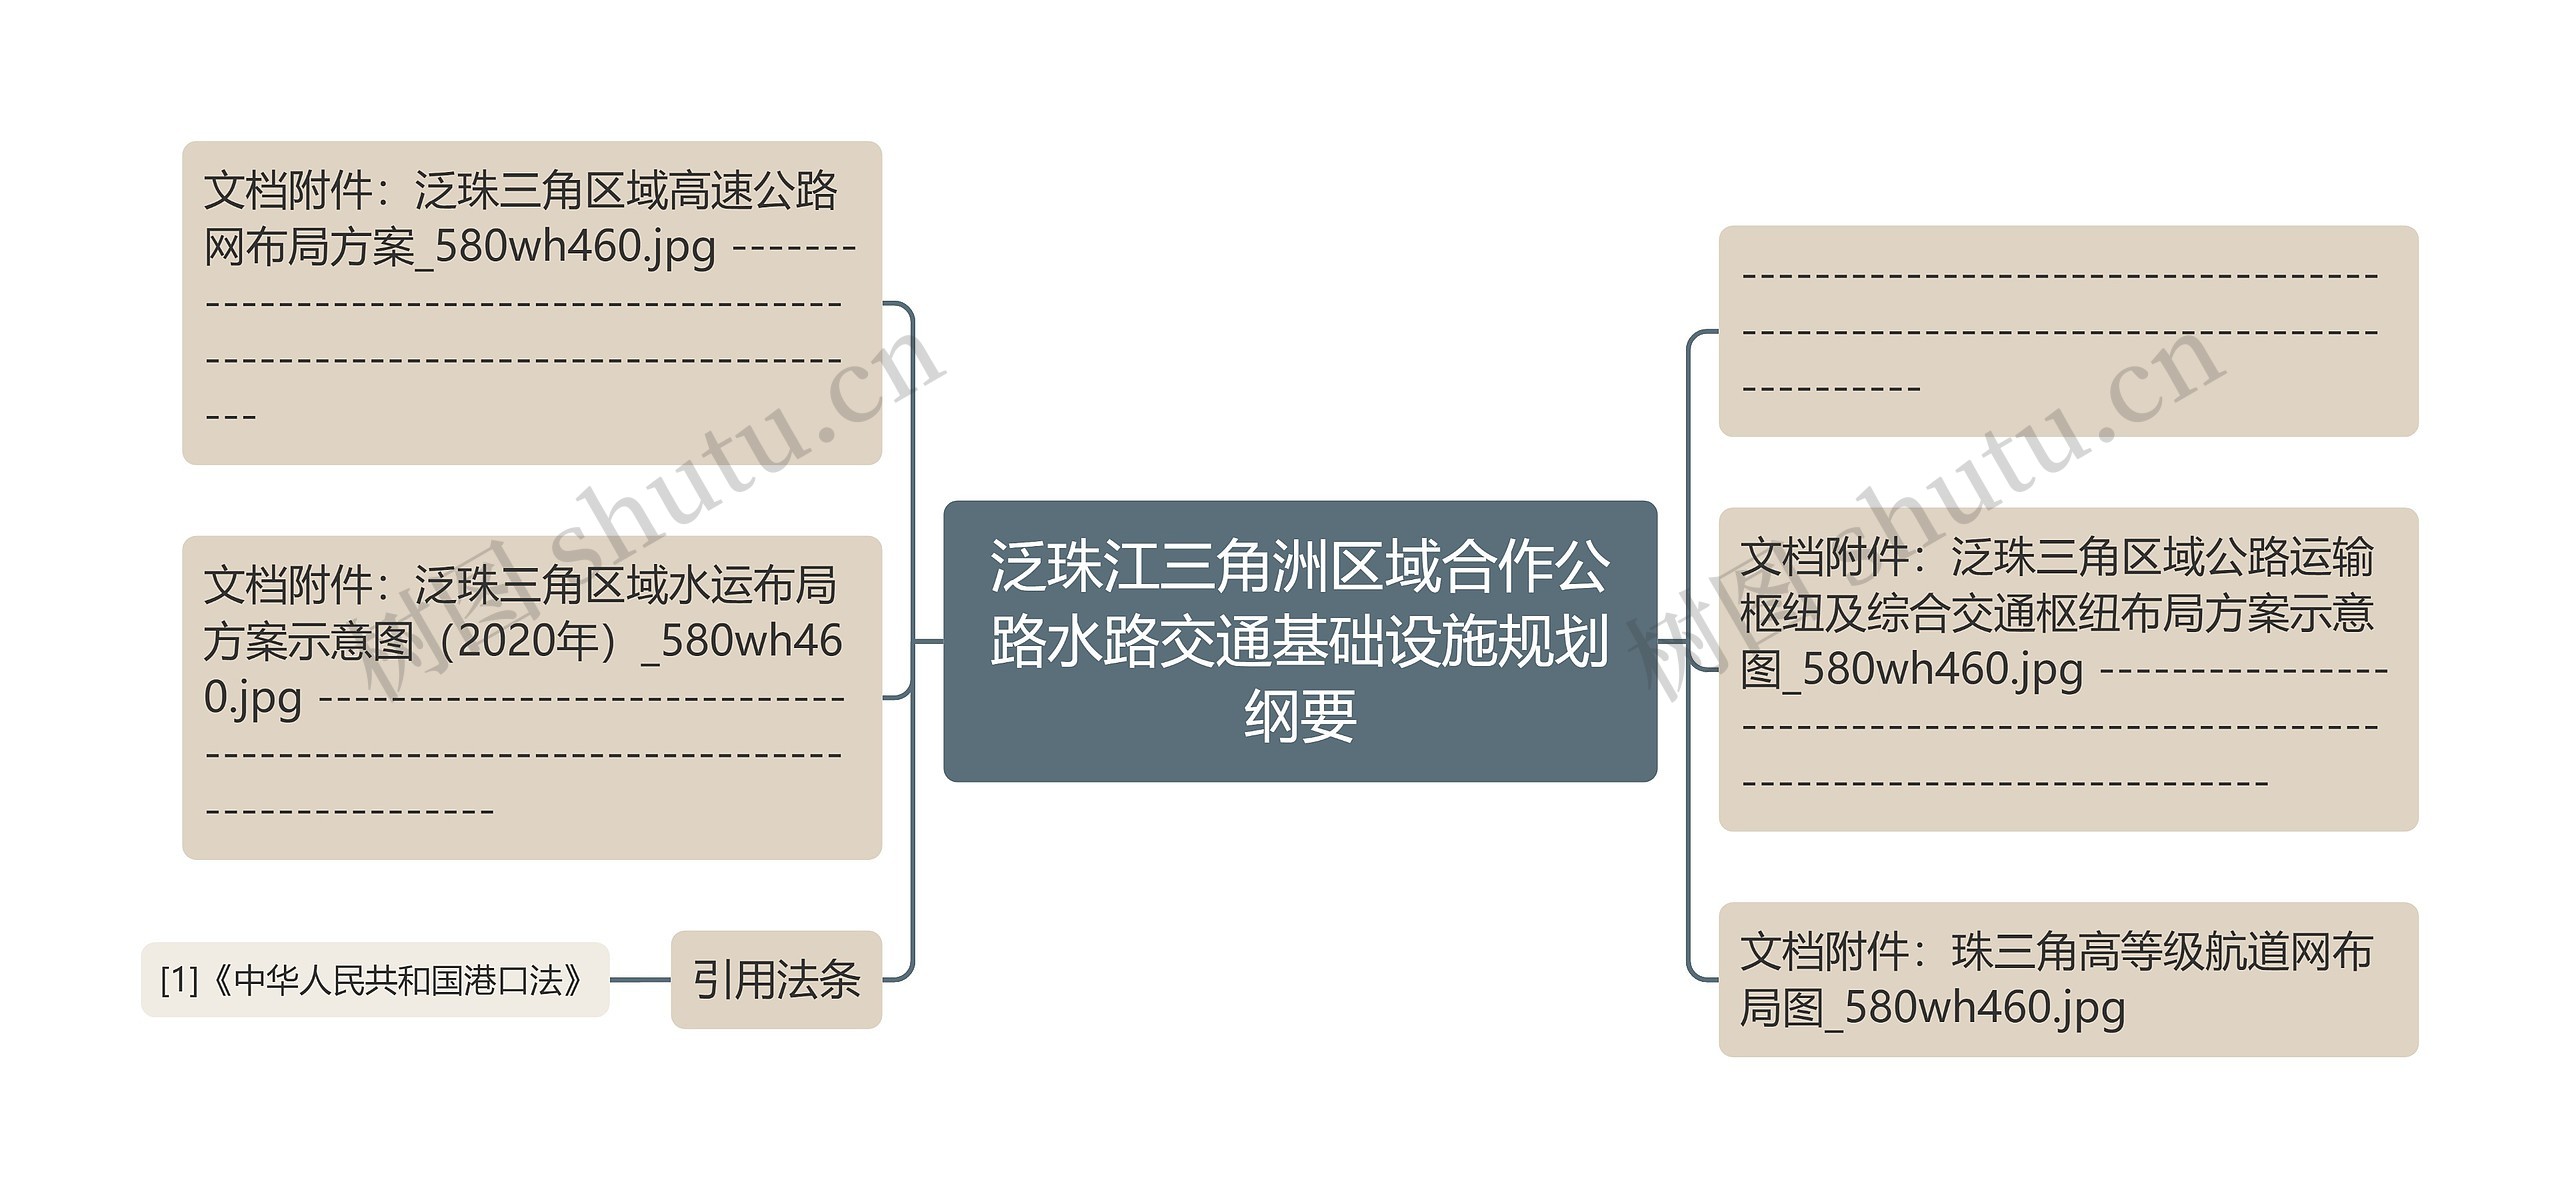 泛珠江三角洲区域合作公路水路交通基础设施规划纲要思维导图